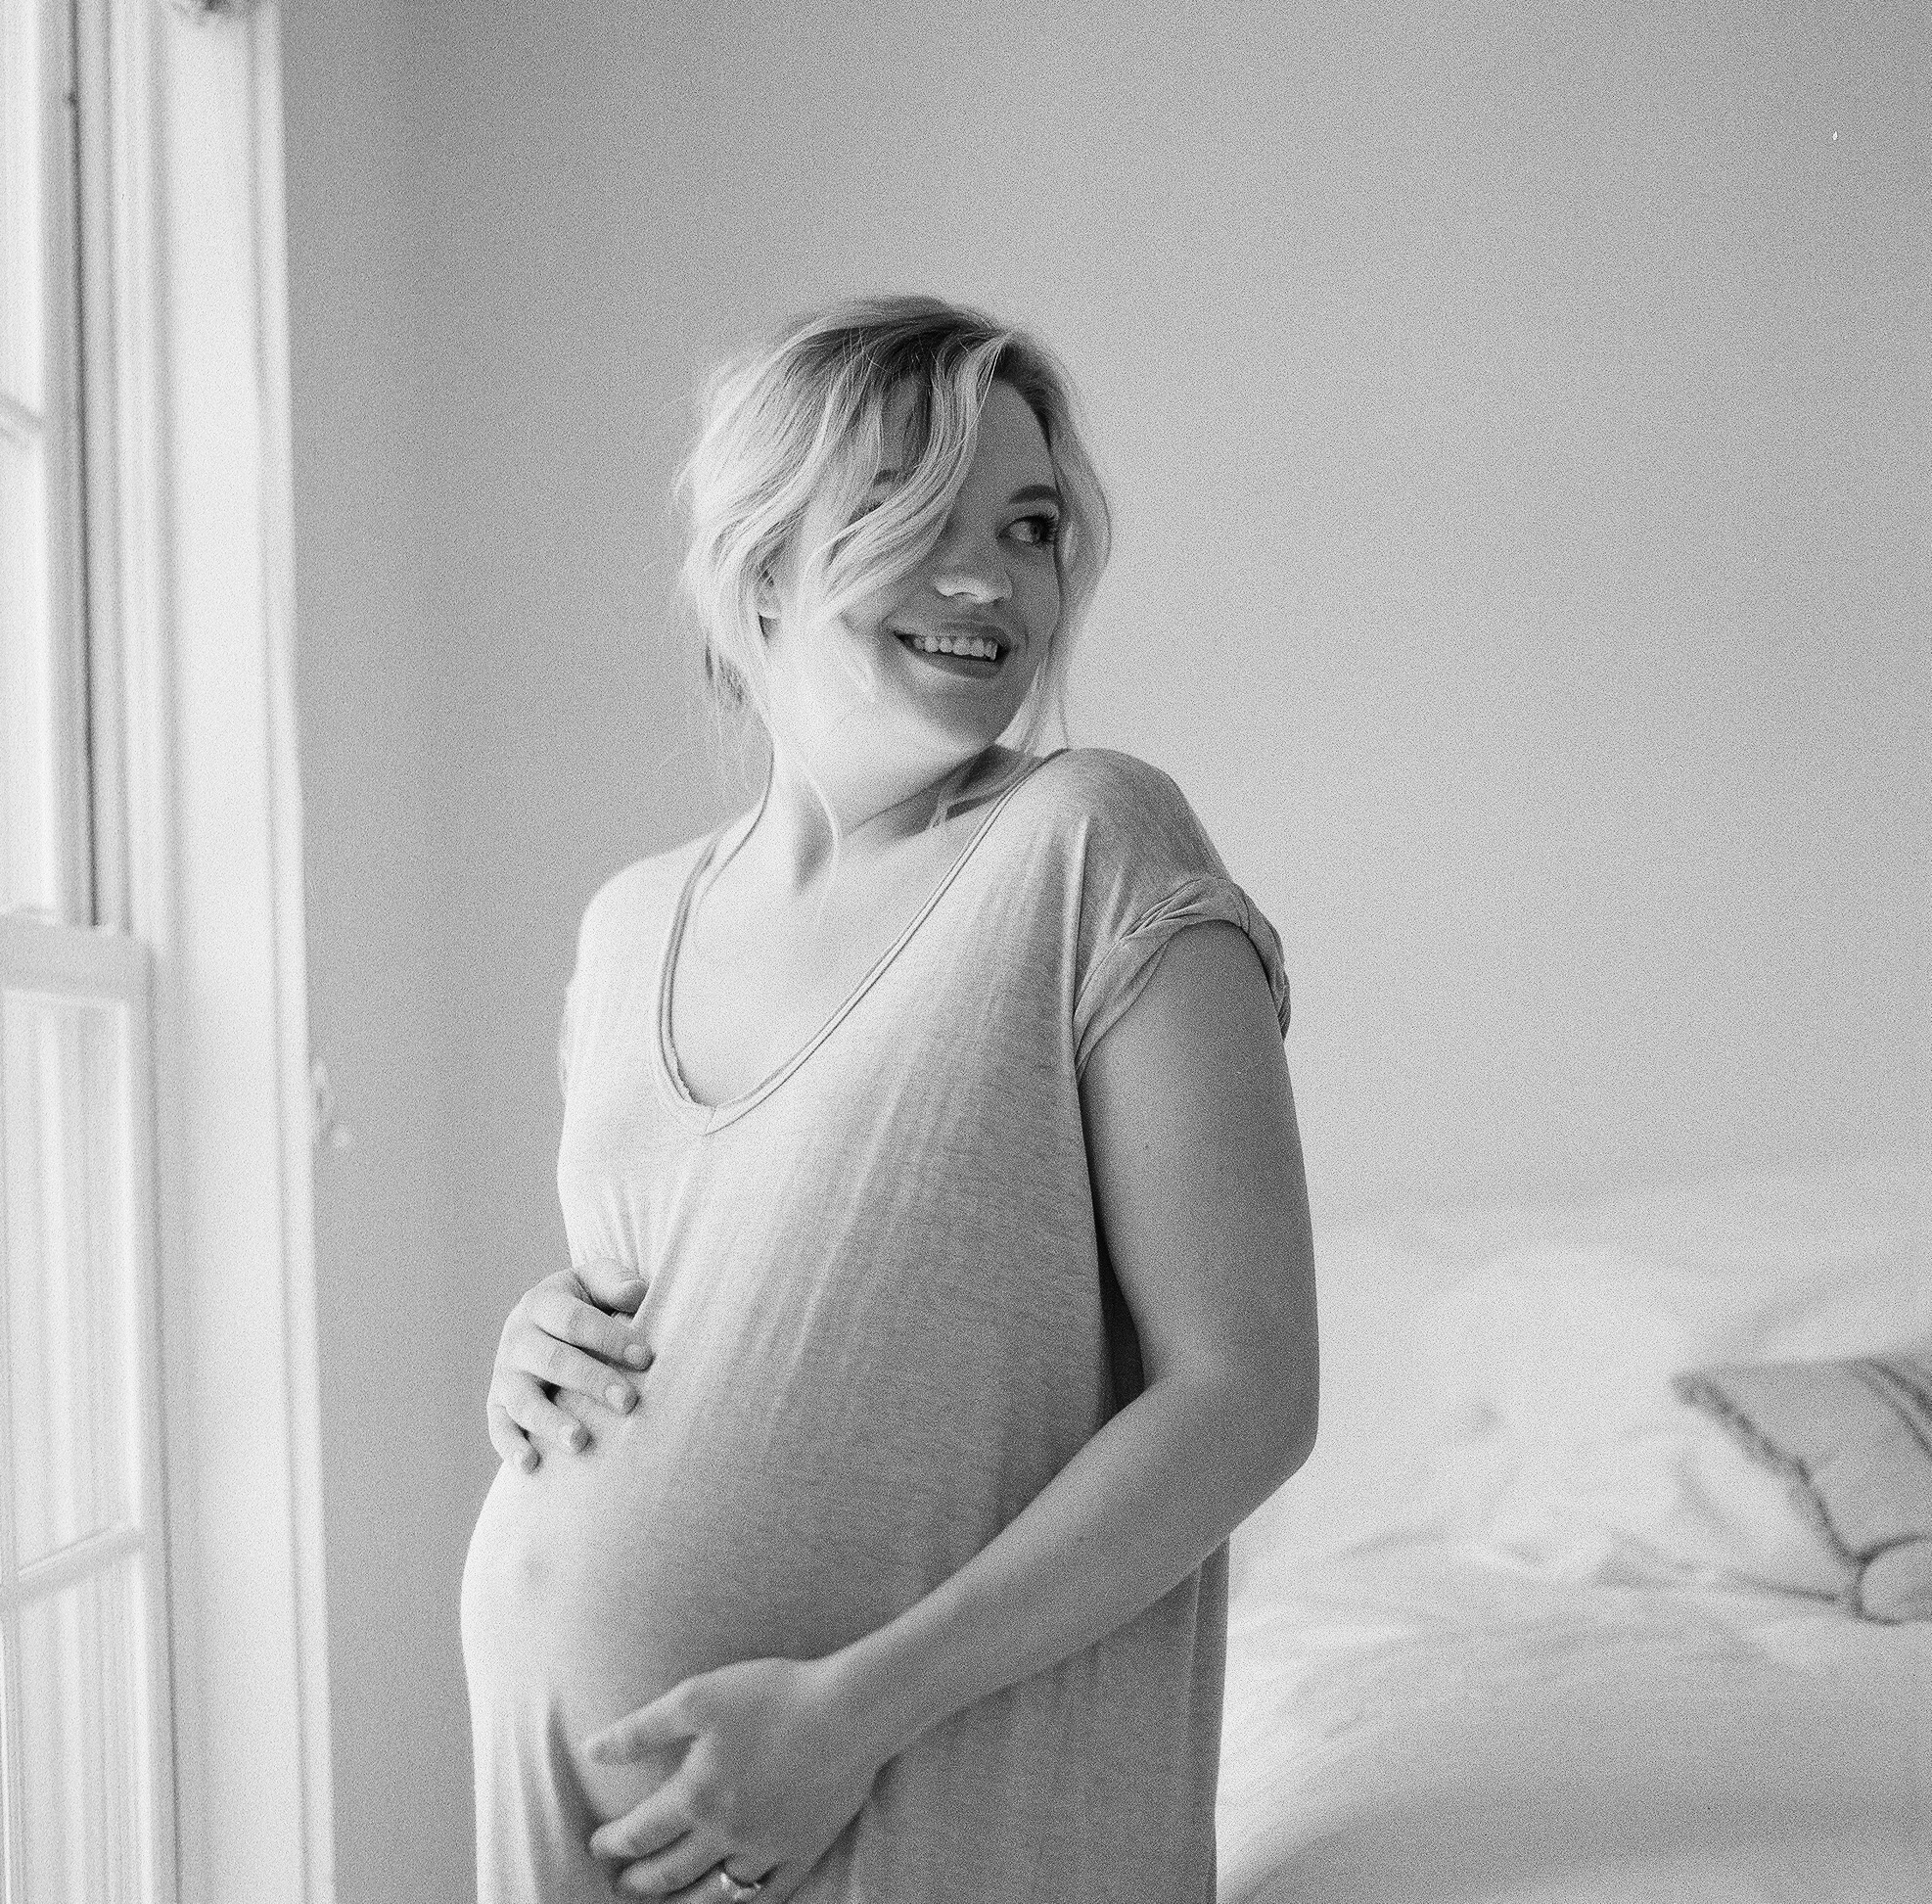 Portland Maine Film Maternity Photographer Tiffany Farley, http://tiffanyfarley.com